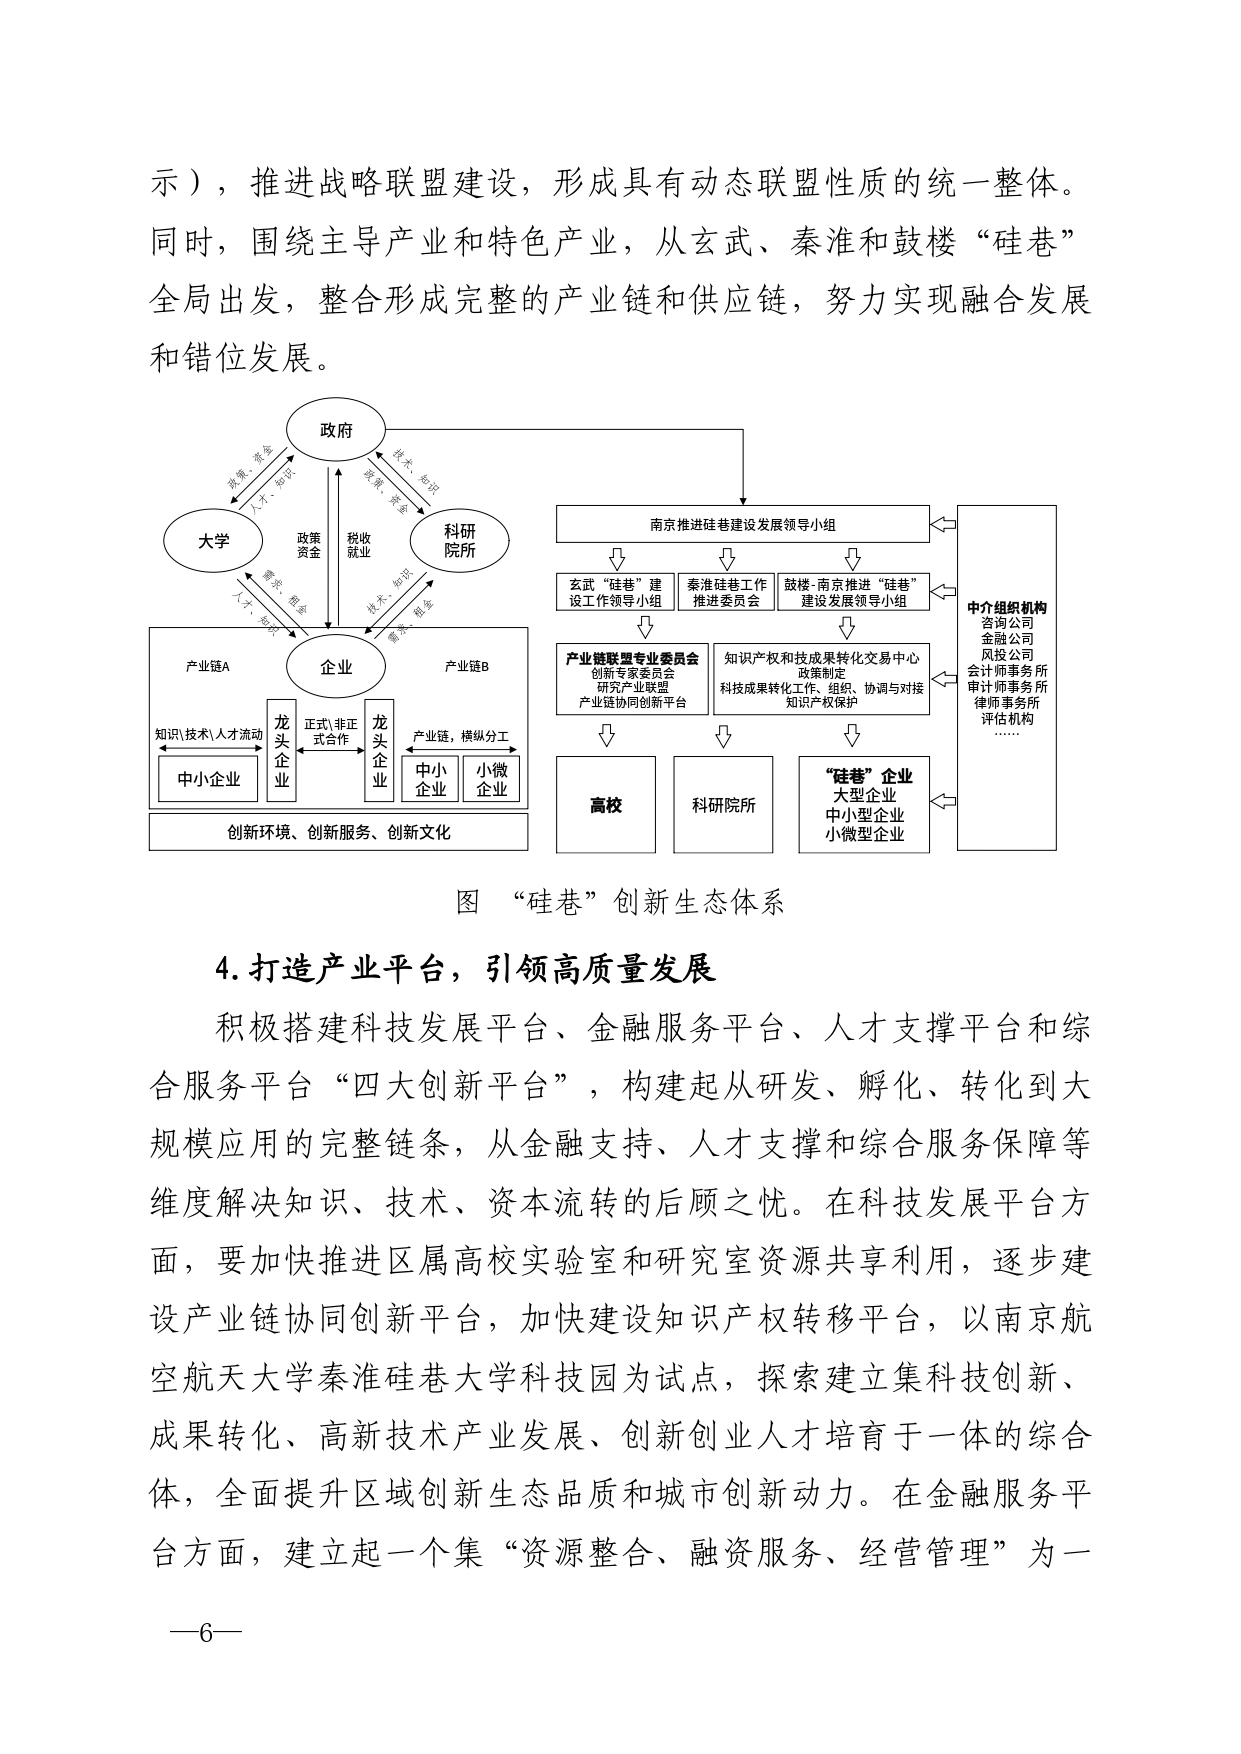 2021年第6期（关于南京城市硅巷发展的若干建议）-印刷版_page-0006.jpg